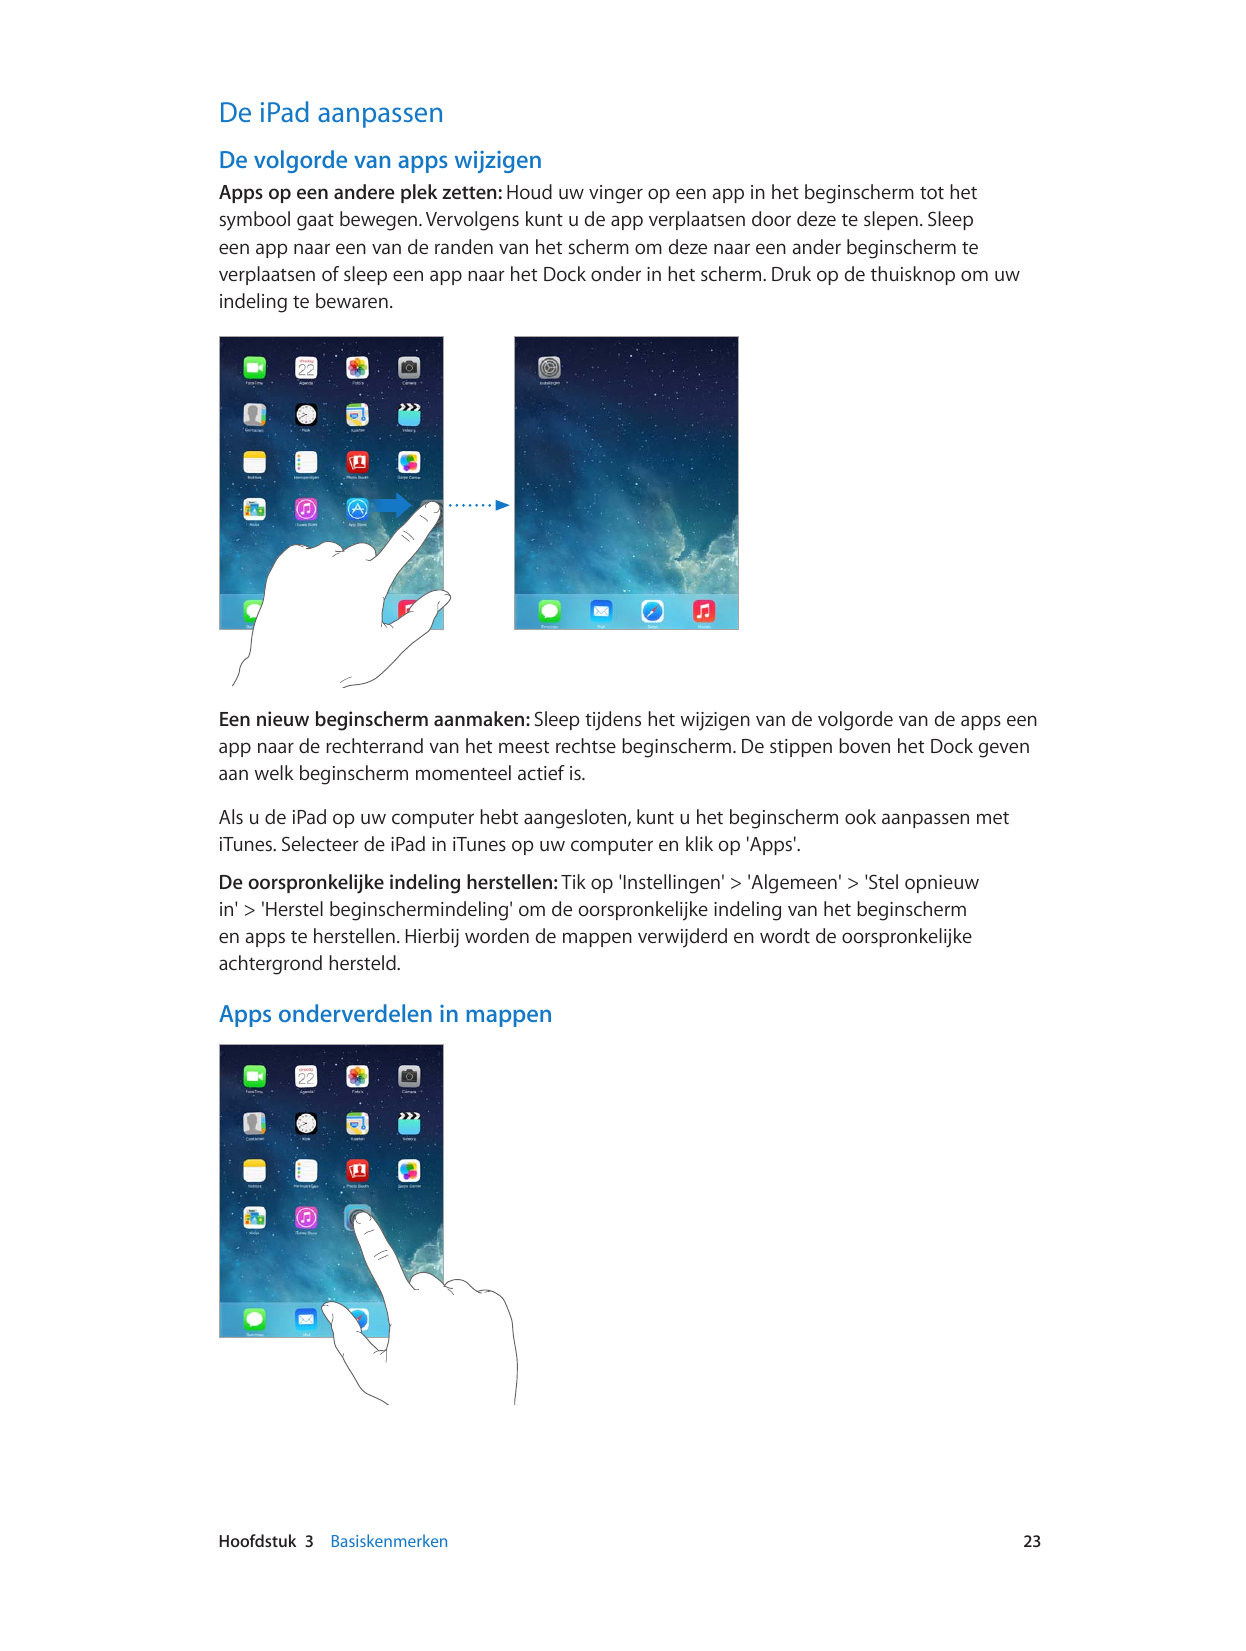 De iPad aanpassenDe volgorde van apps wijzigenApps op een andere plek zetten: Houd uw vinger op een app in het beginscherm tot h